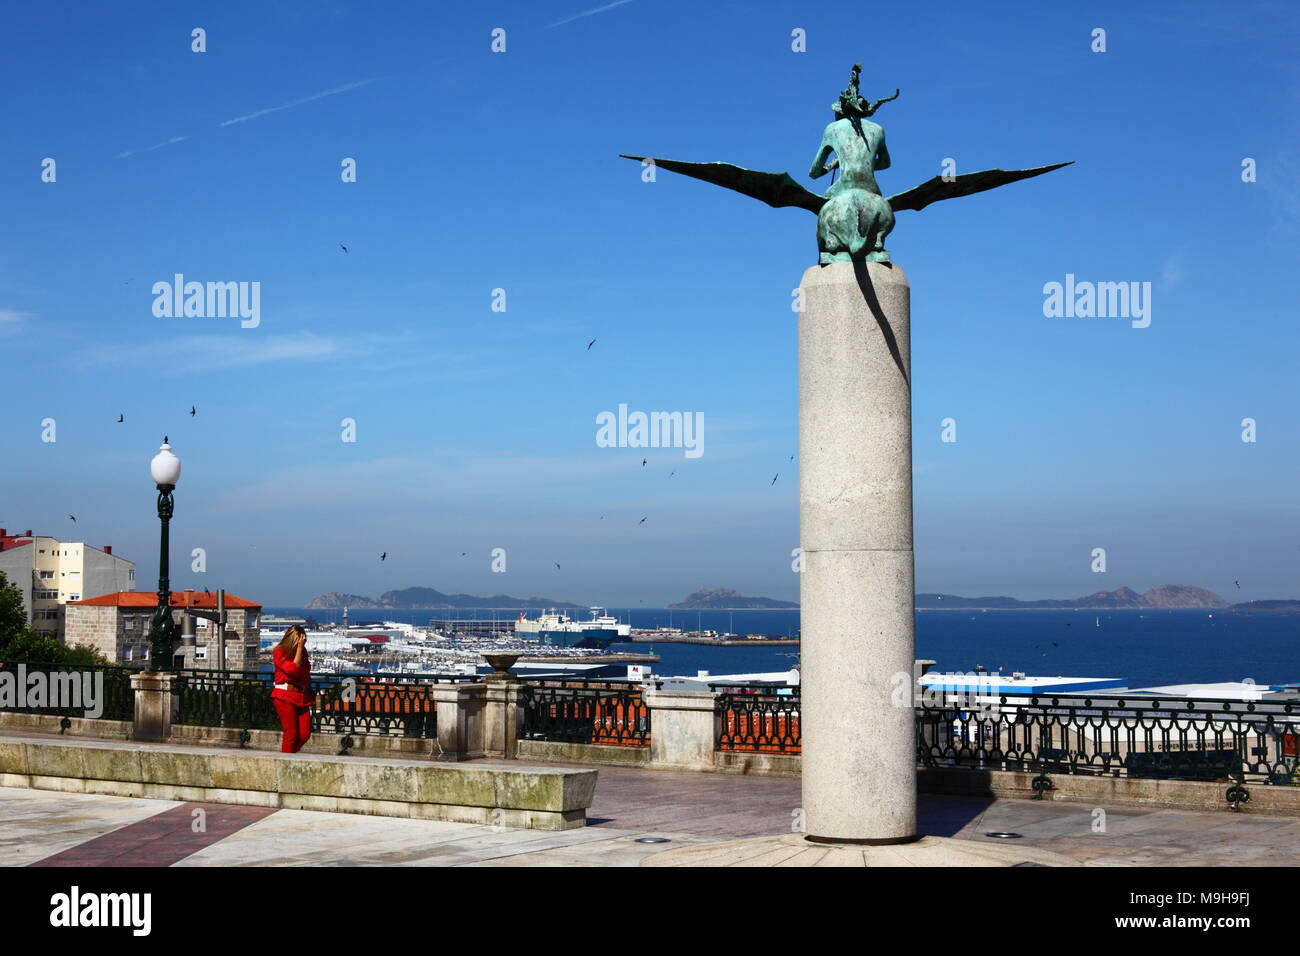 Monument to singers, poets and trovadores of the Ria of Vigo / Monumento a los cantores, poetas y trovadores de la Ría de Vigo, Vigo, Galicia, Spain Stock Photo